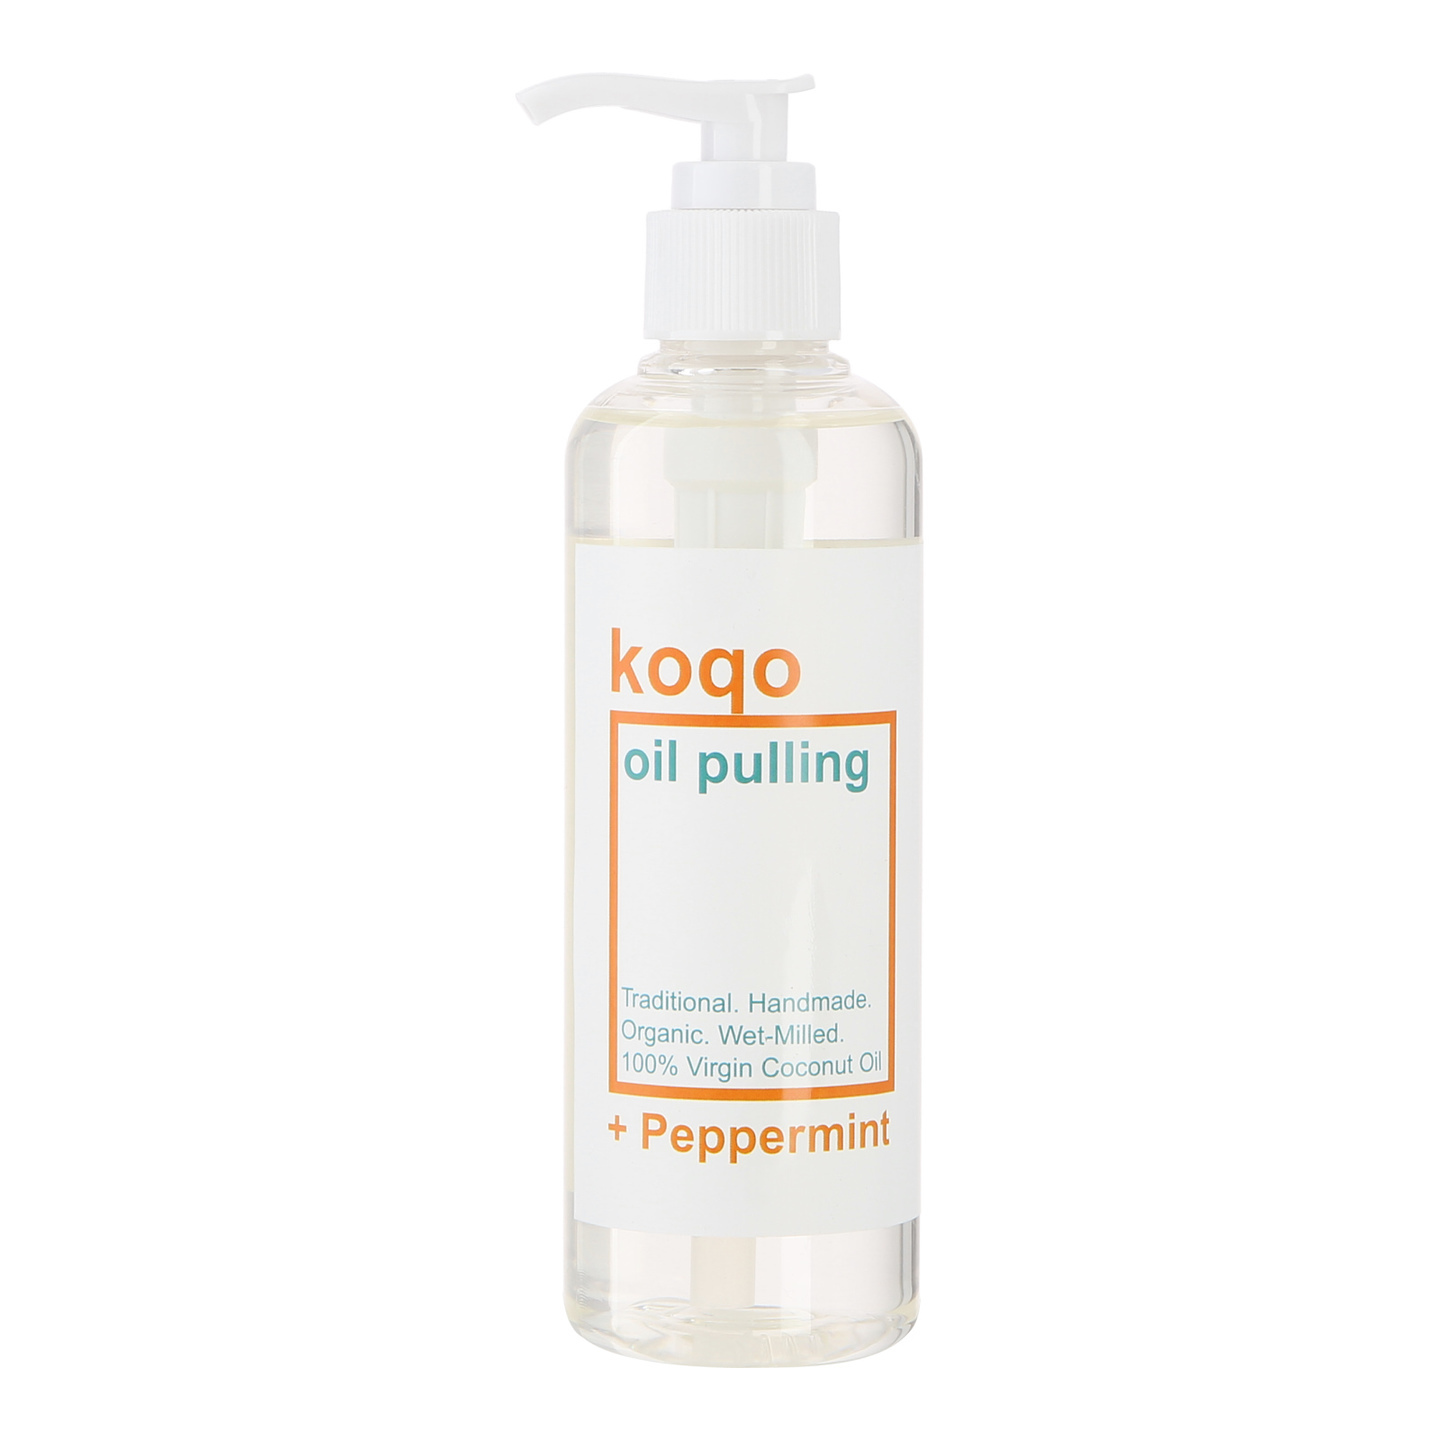 koqo Natural Mouthwash - Peppermint OIL PULLING 250ml pump